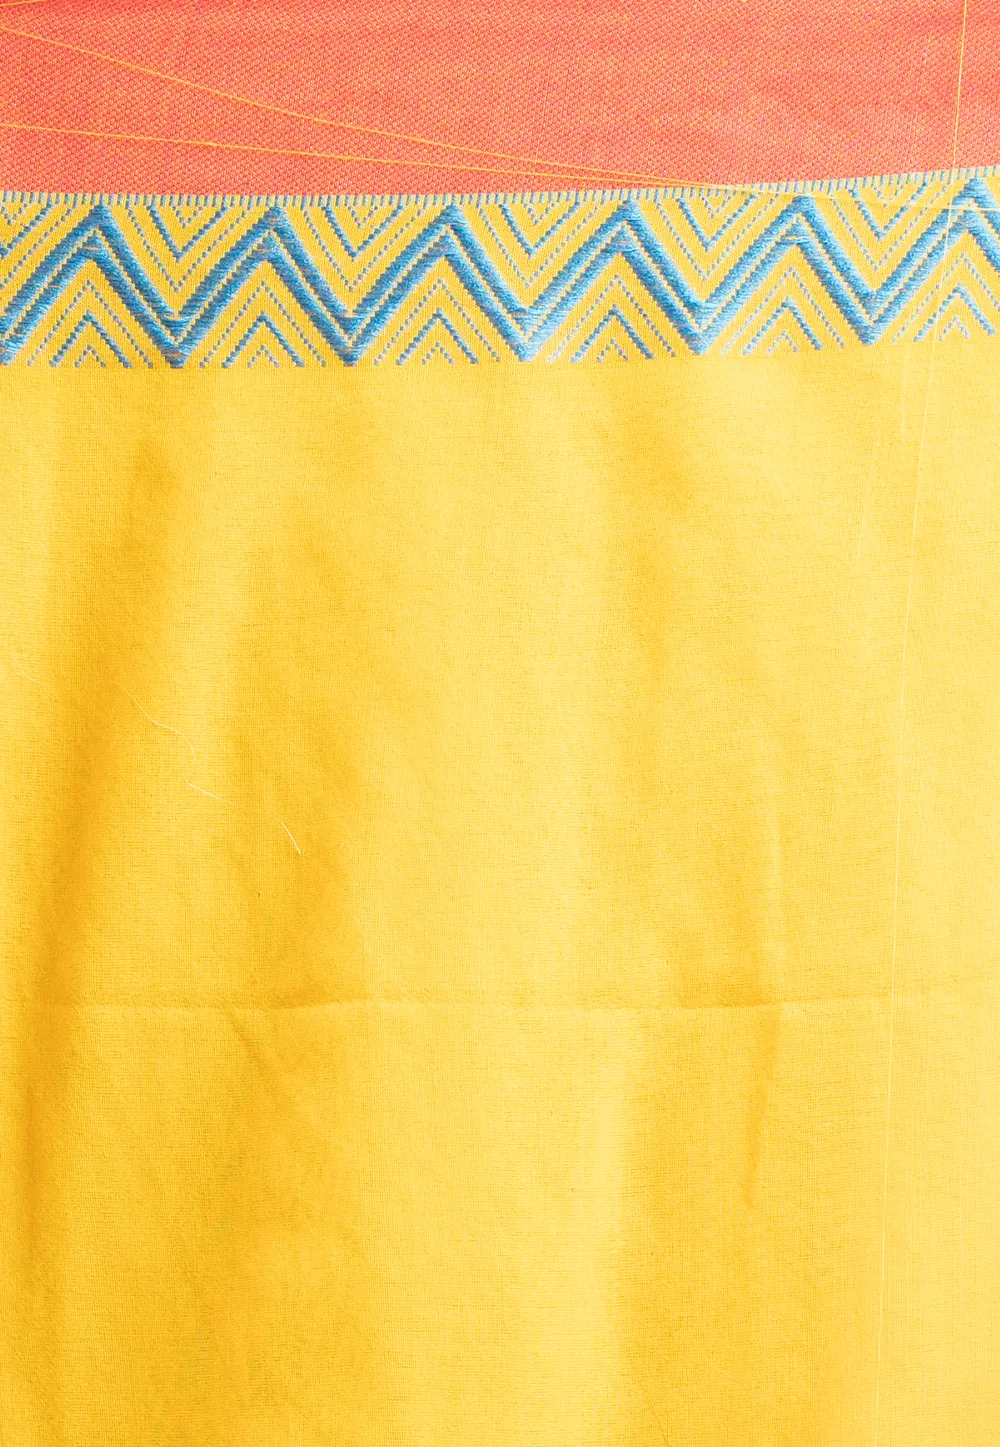 yellow handloom cotton saree with woven multicolor border 601a72c40e88a 1612346052